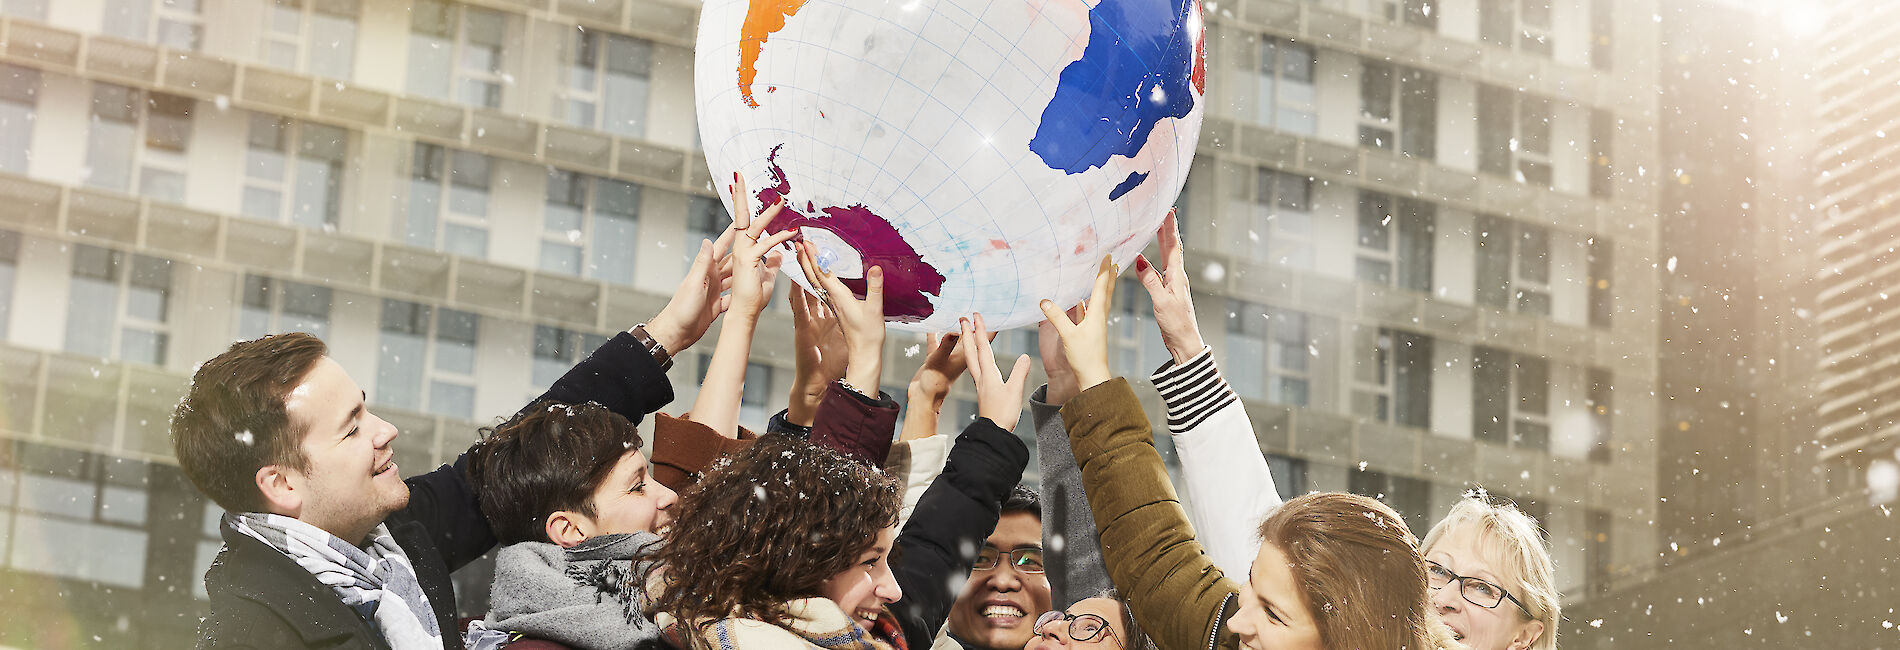 Mitglieder des Team GCB halten gemeinsam einen Kunststoff-Globus in die Luft